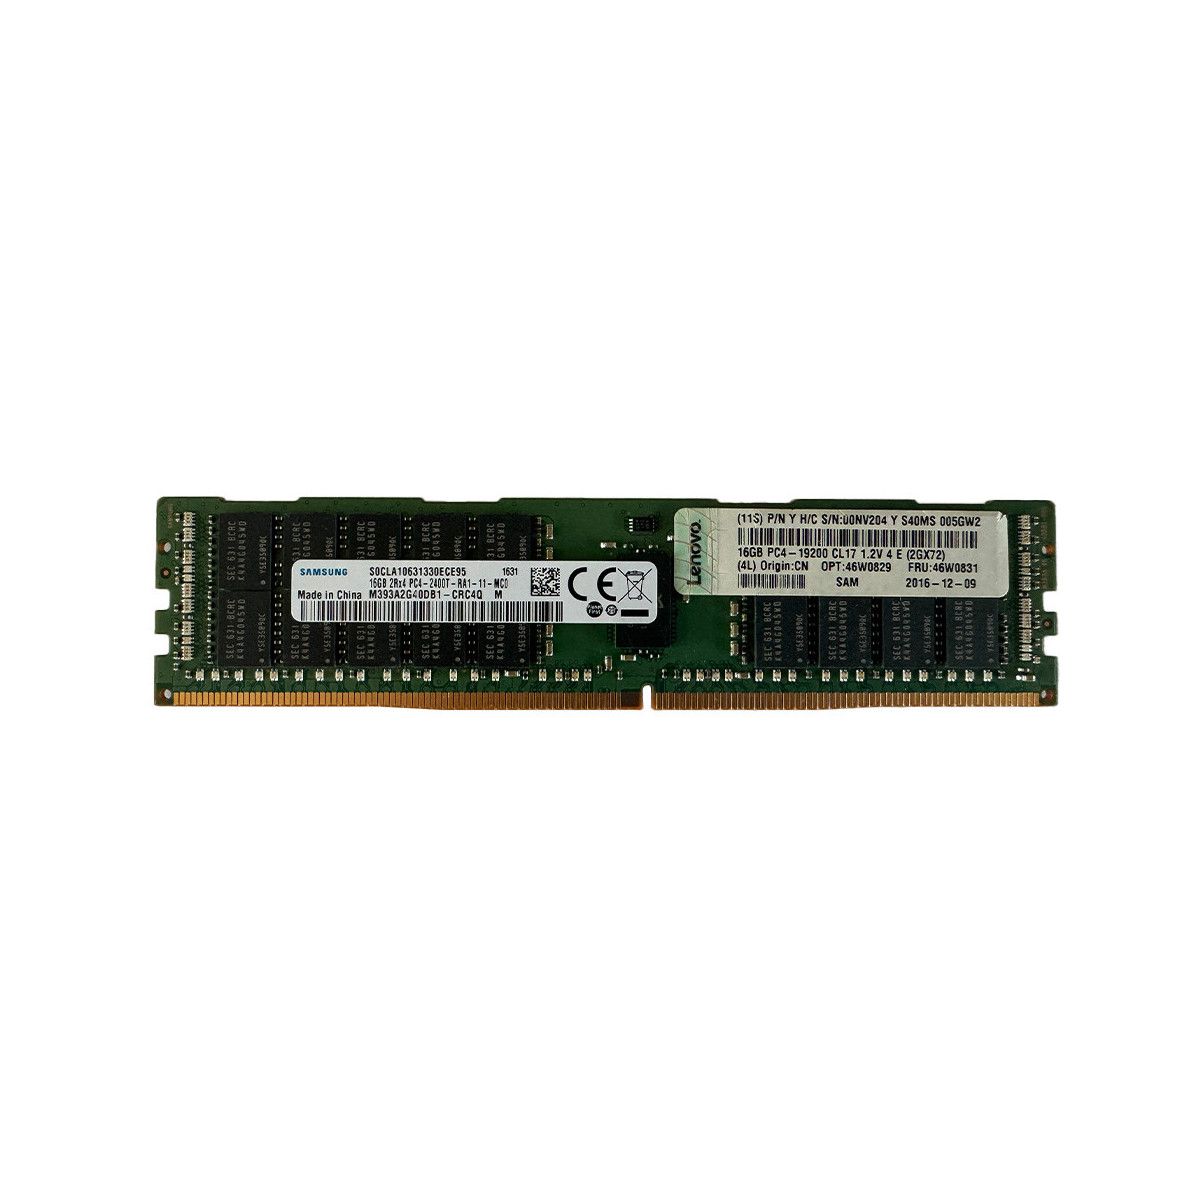 A8797578-MS - Memstar 1x 16GB DDR4-2400 RDIMM PC4-19200T-R - Mem-Star Kompatybilna pamięć OEM 1 - Memstar 